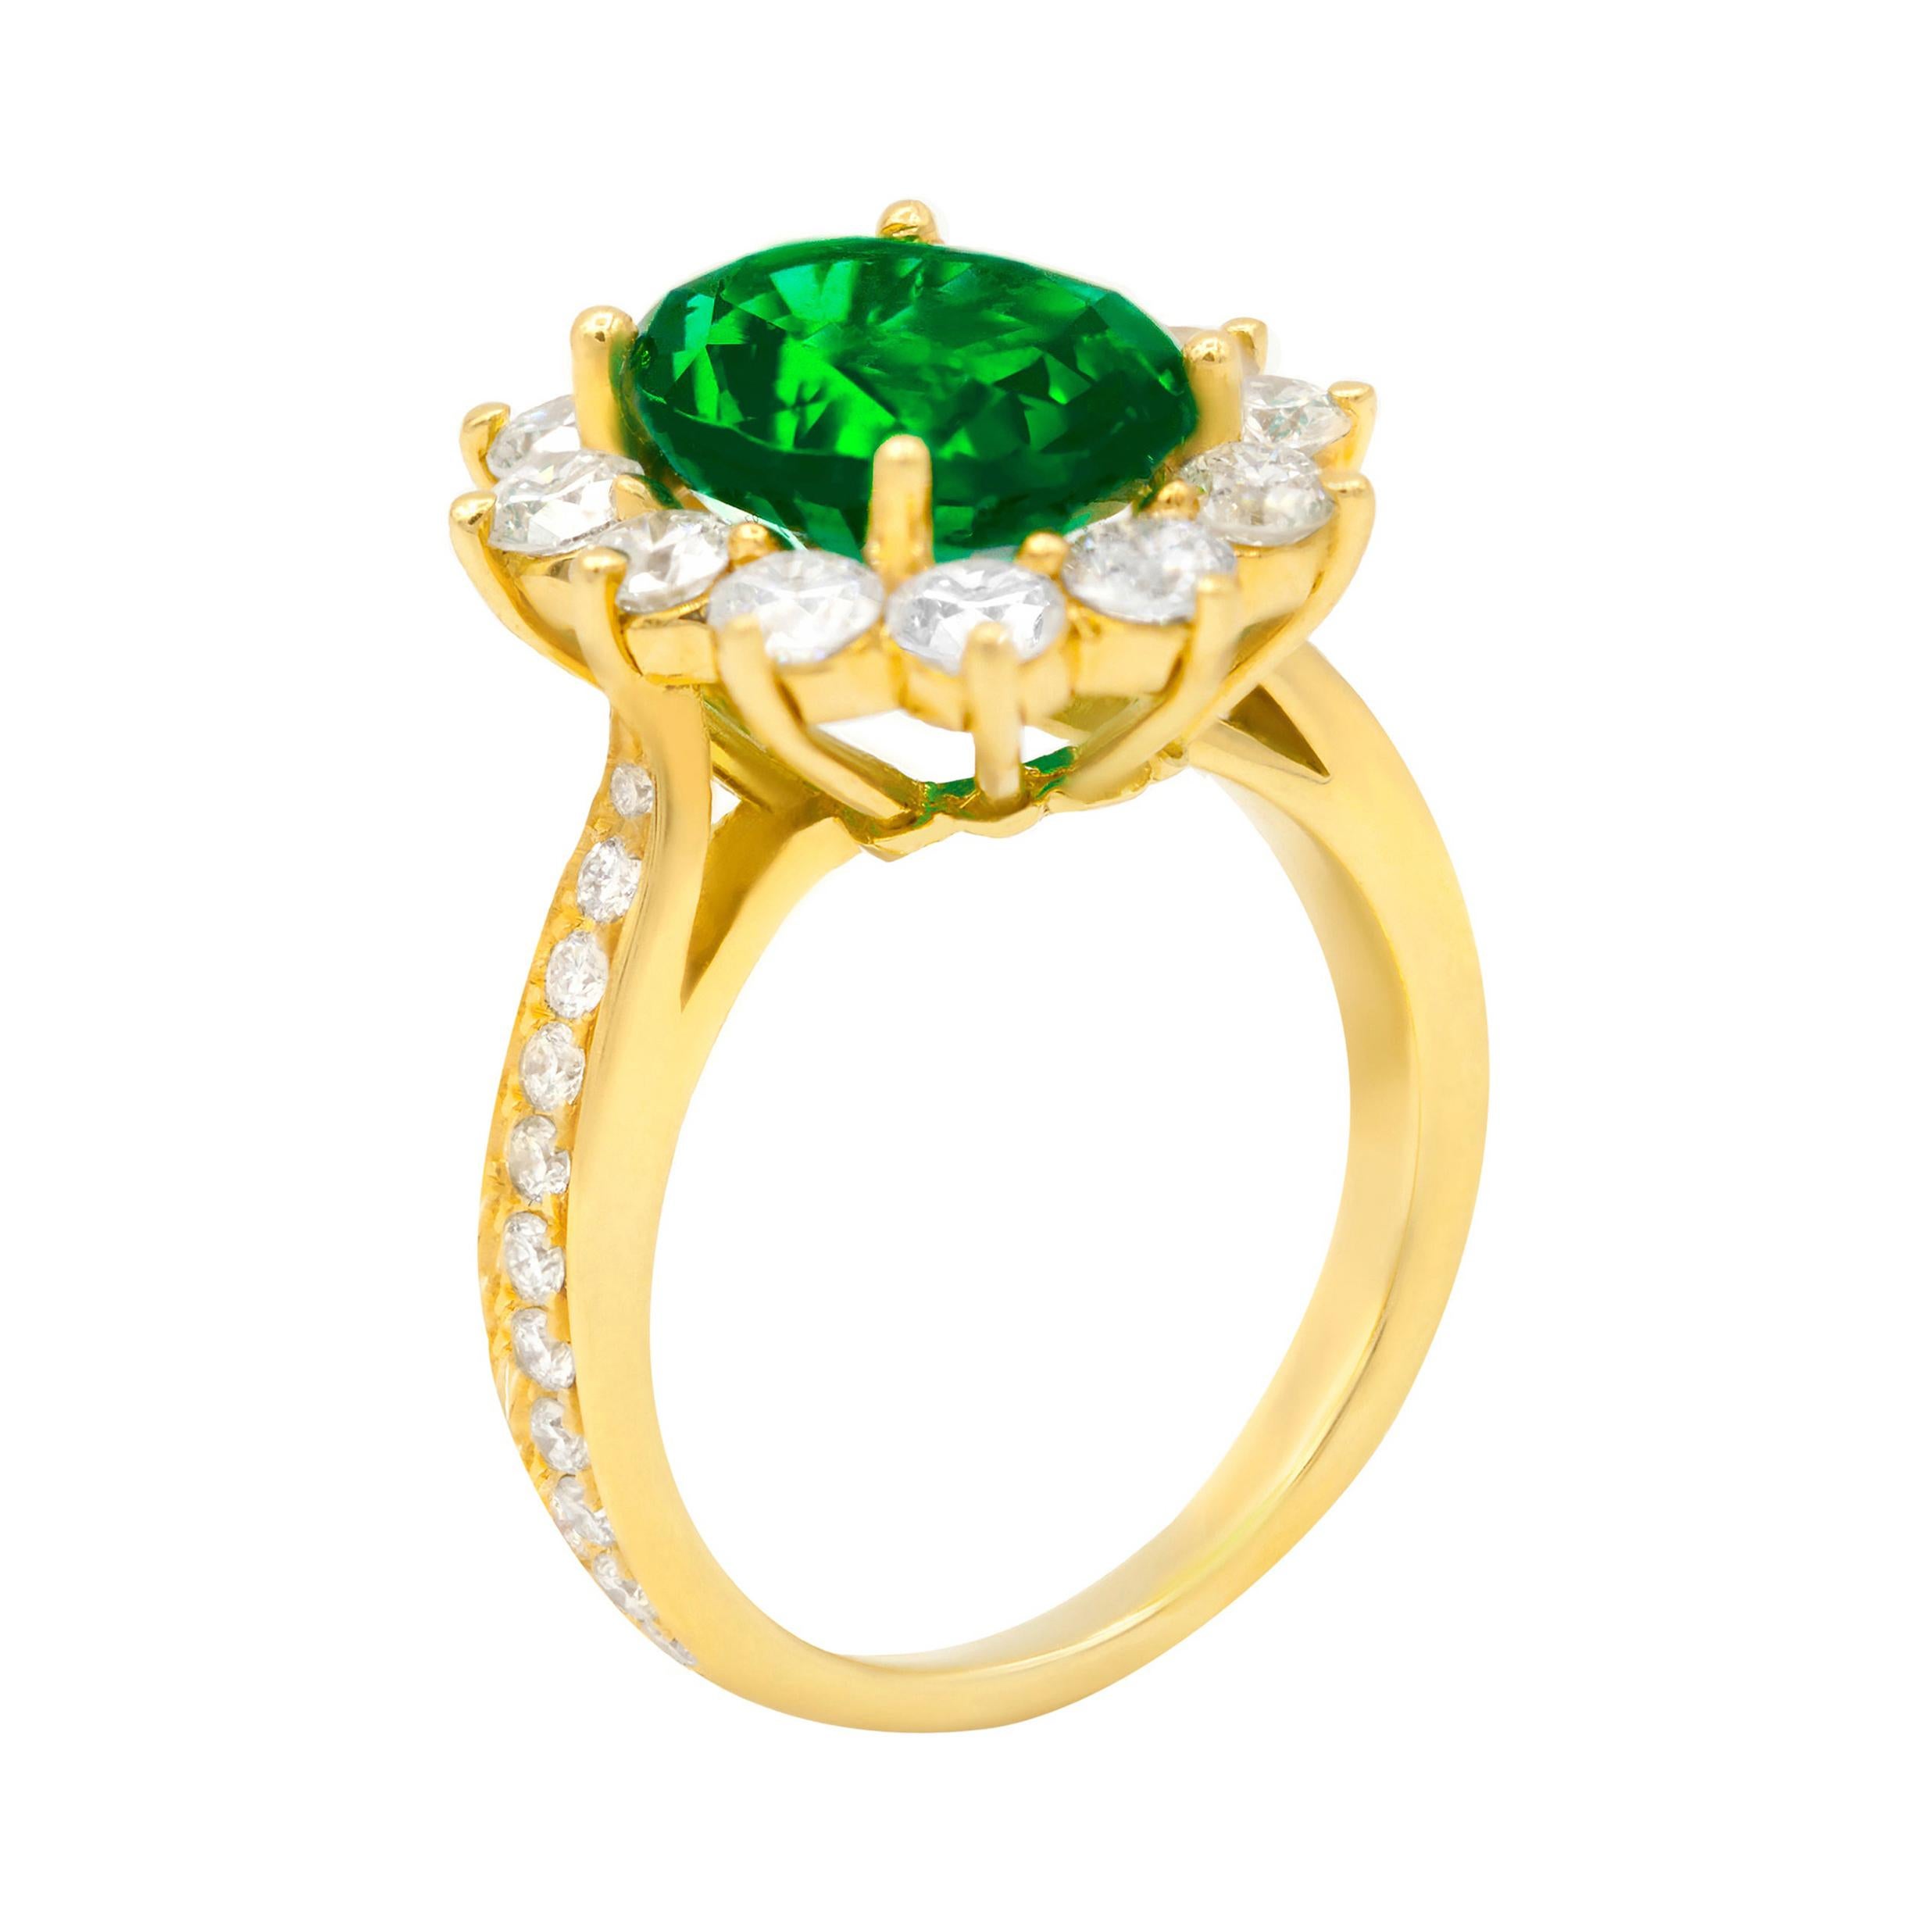 Smaragd-Diamant-Ring im Blumendesign mit 4,20 ct Smaragd/Oval mit 1,80 ct runden Diamanten rundum in 18kt Gelbgold gefasst.
Diana M. ist seit über 35 Jahren ein führender Anbieter von hochwertigem Schmuck.
Diana M ist eine zentrale Anlaufstelle für